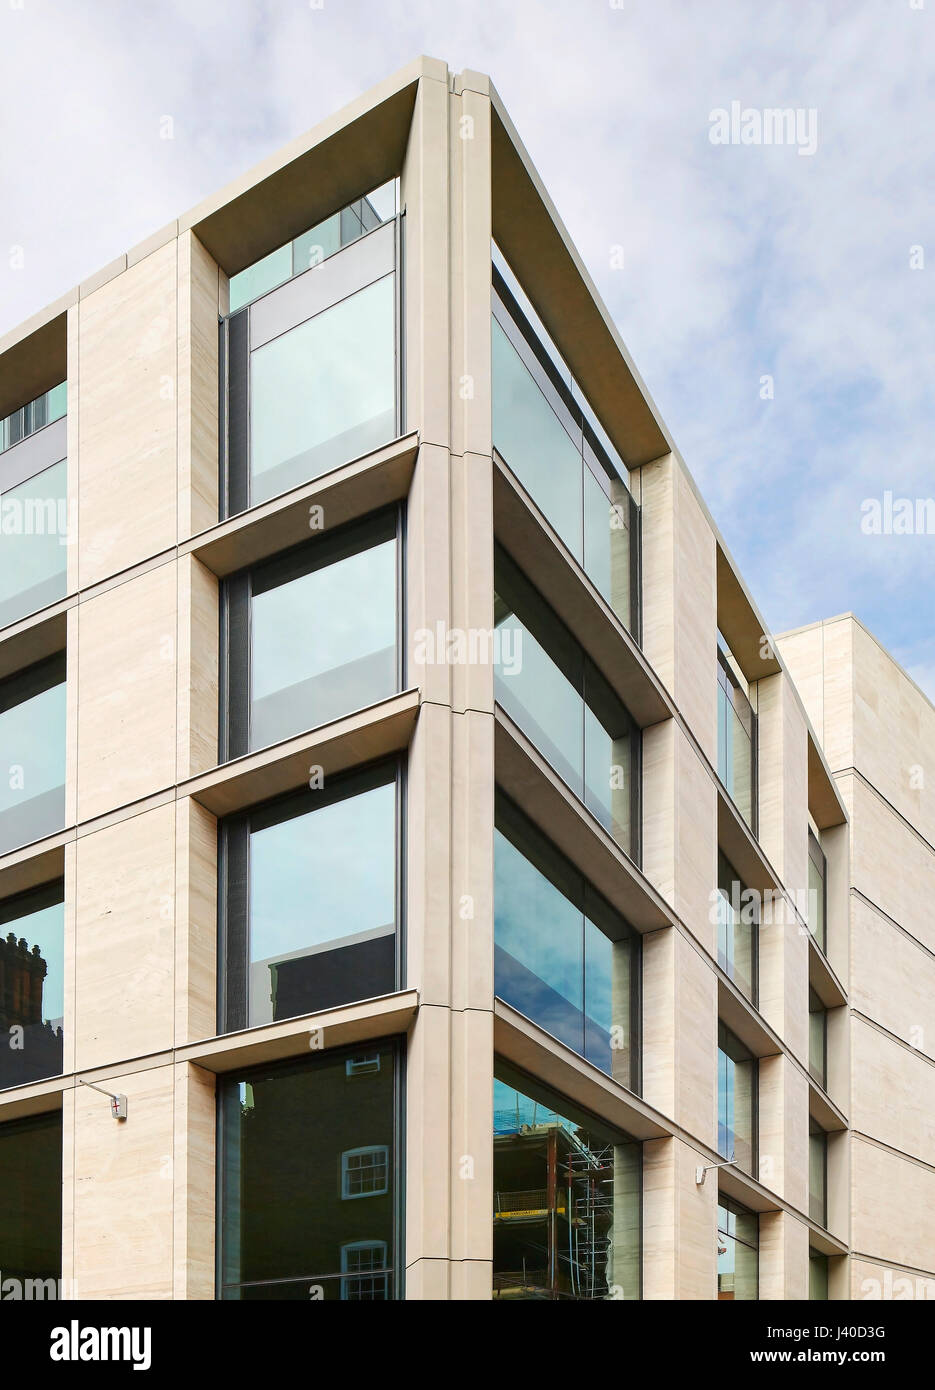 Ecke Fassade Detail. Chancery Lane, London, Vereinigtes Königreich. Architekt: Bennetts Associates Architects, 2015. Stockfoto